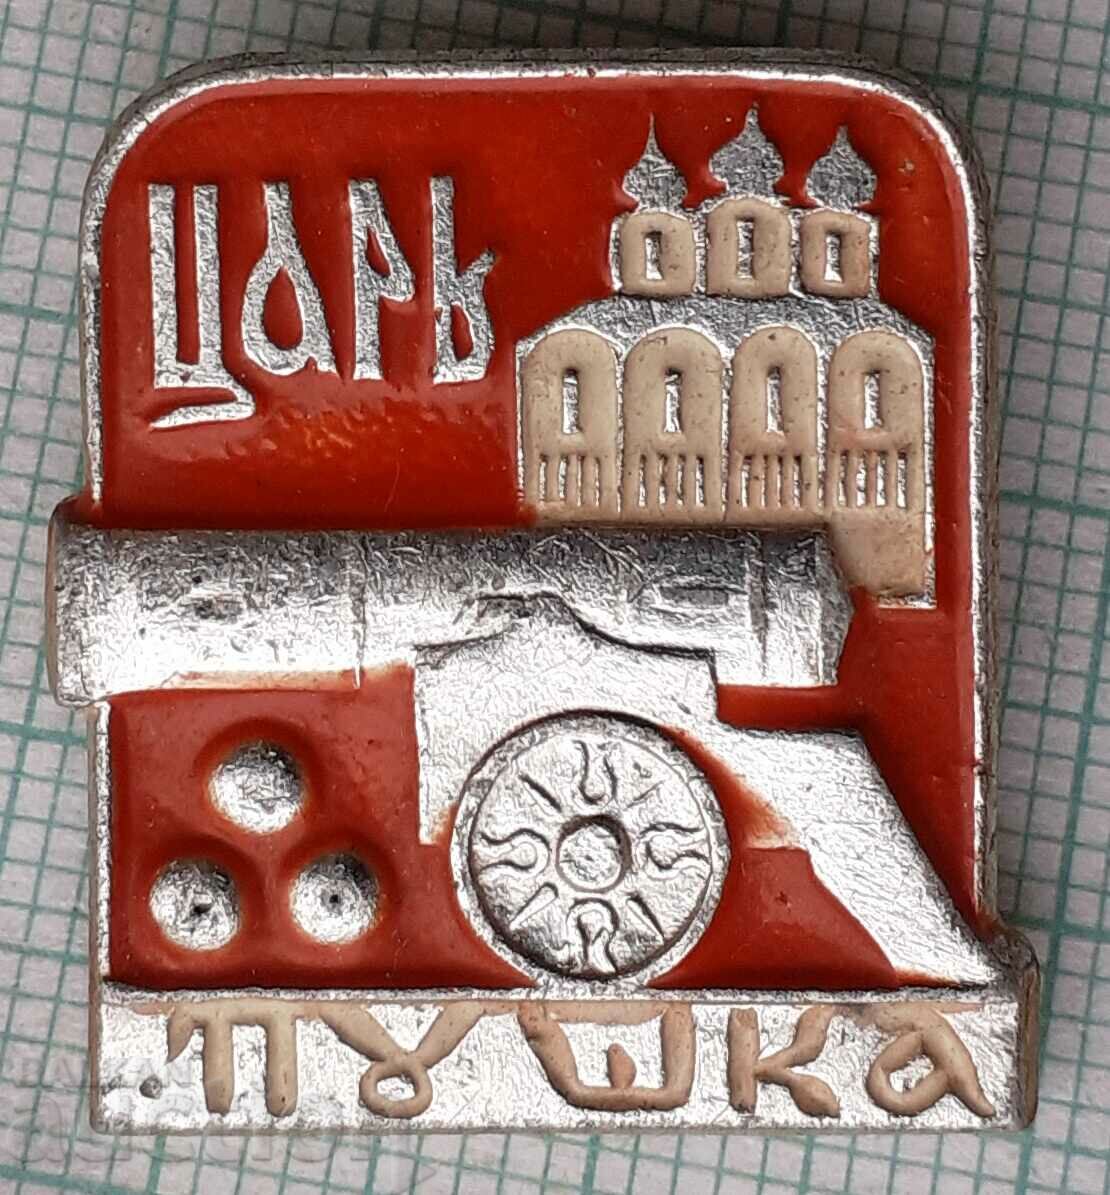 11845 Badge - Tsar Rifle